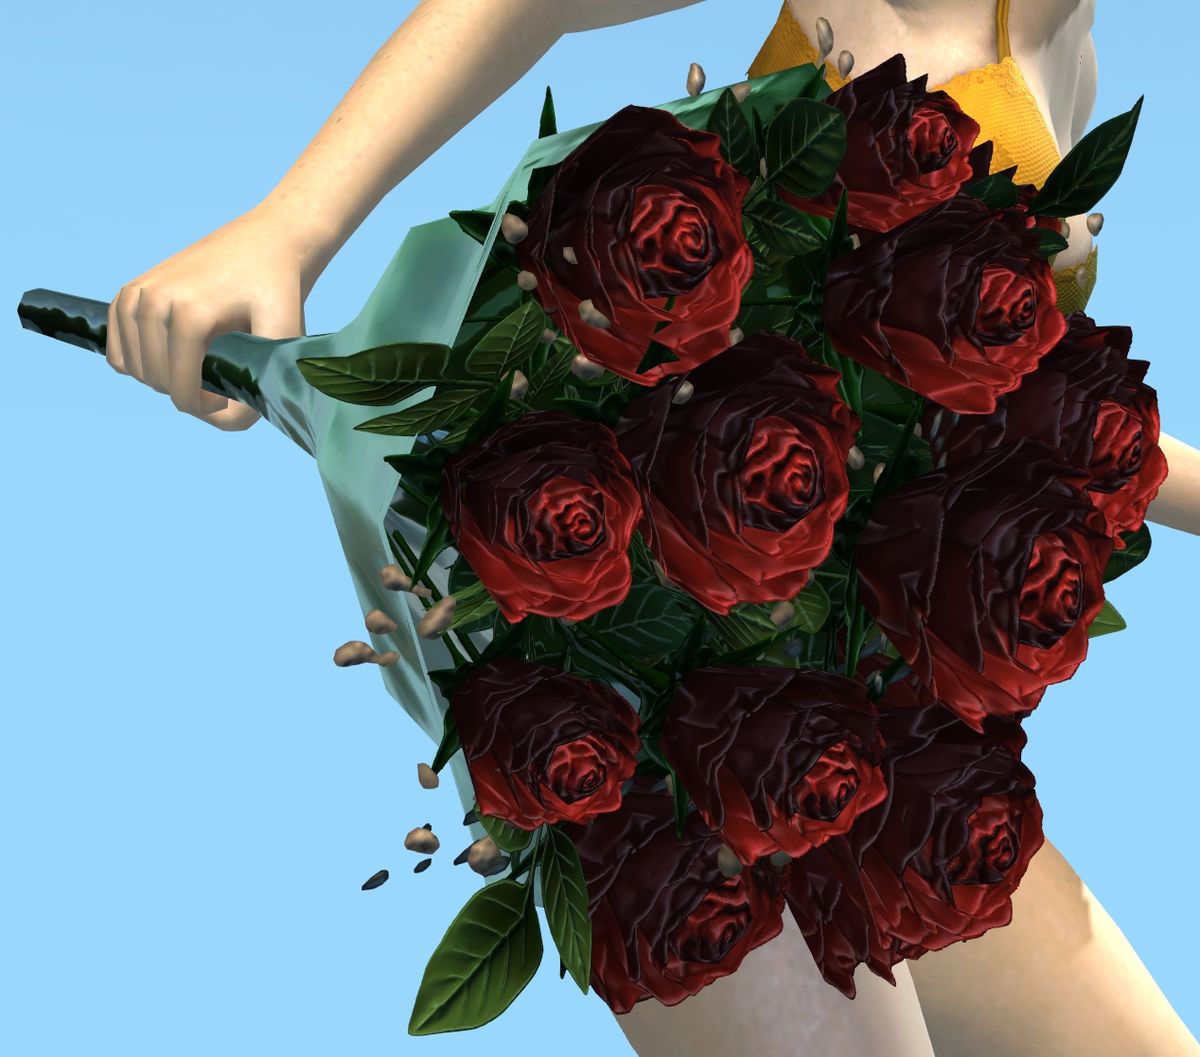 Bouquet of Roses - Guild Wars 2 Wiki (GW2W)